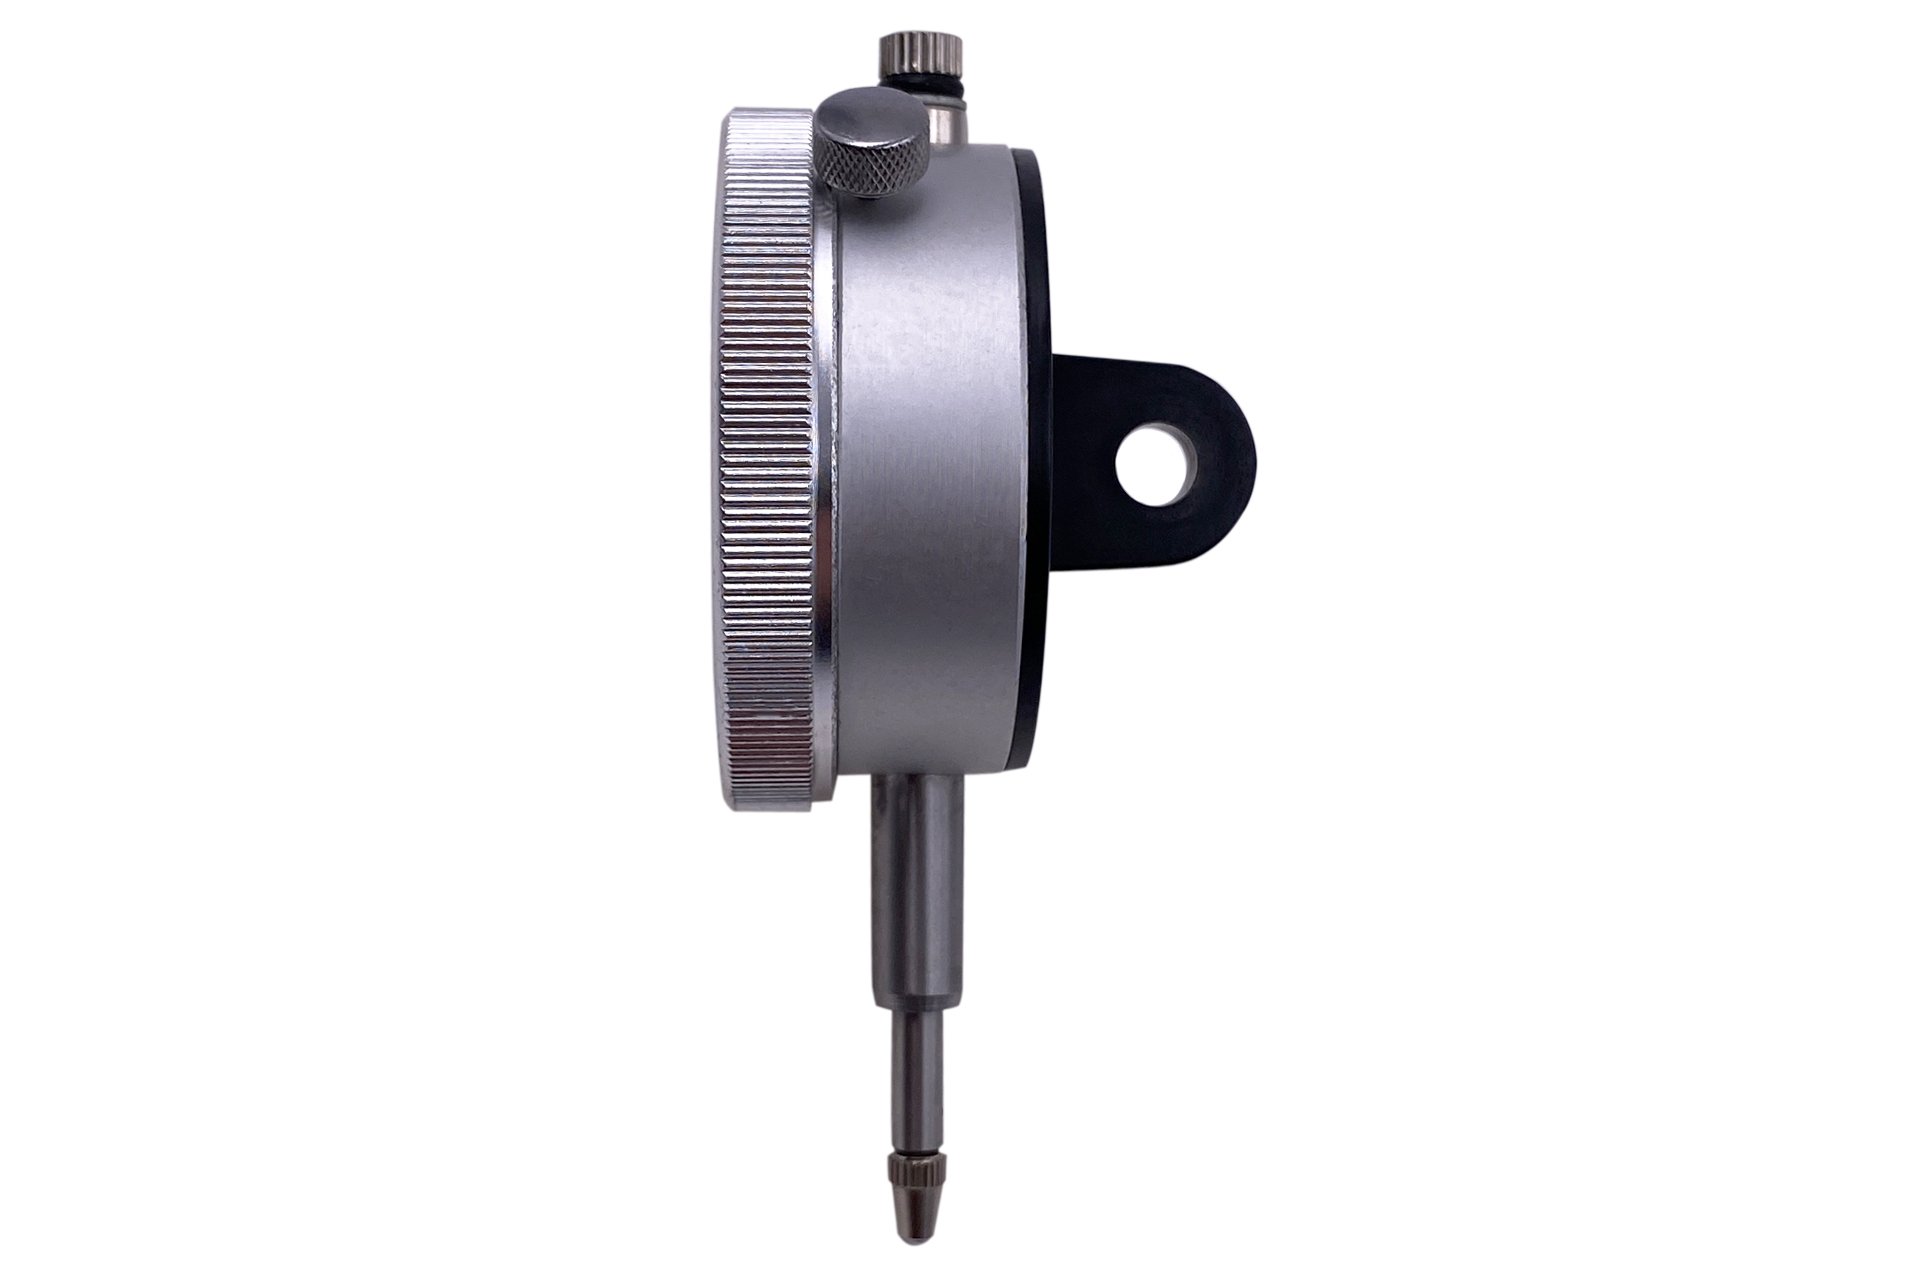 Magnet Messstativ Magnetfuß Zentralklemmung Messuhrhalter Messuhr Anzeige 0-10mm 